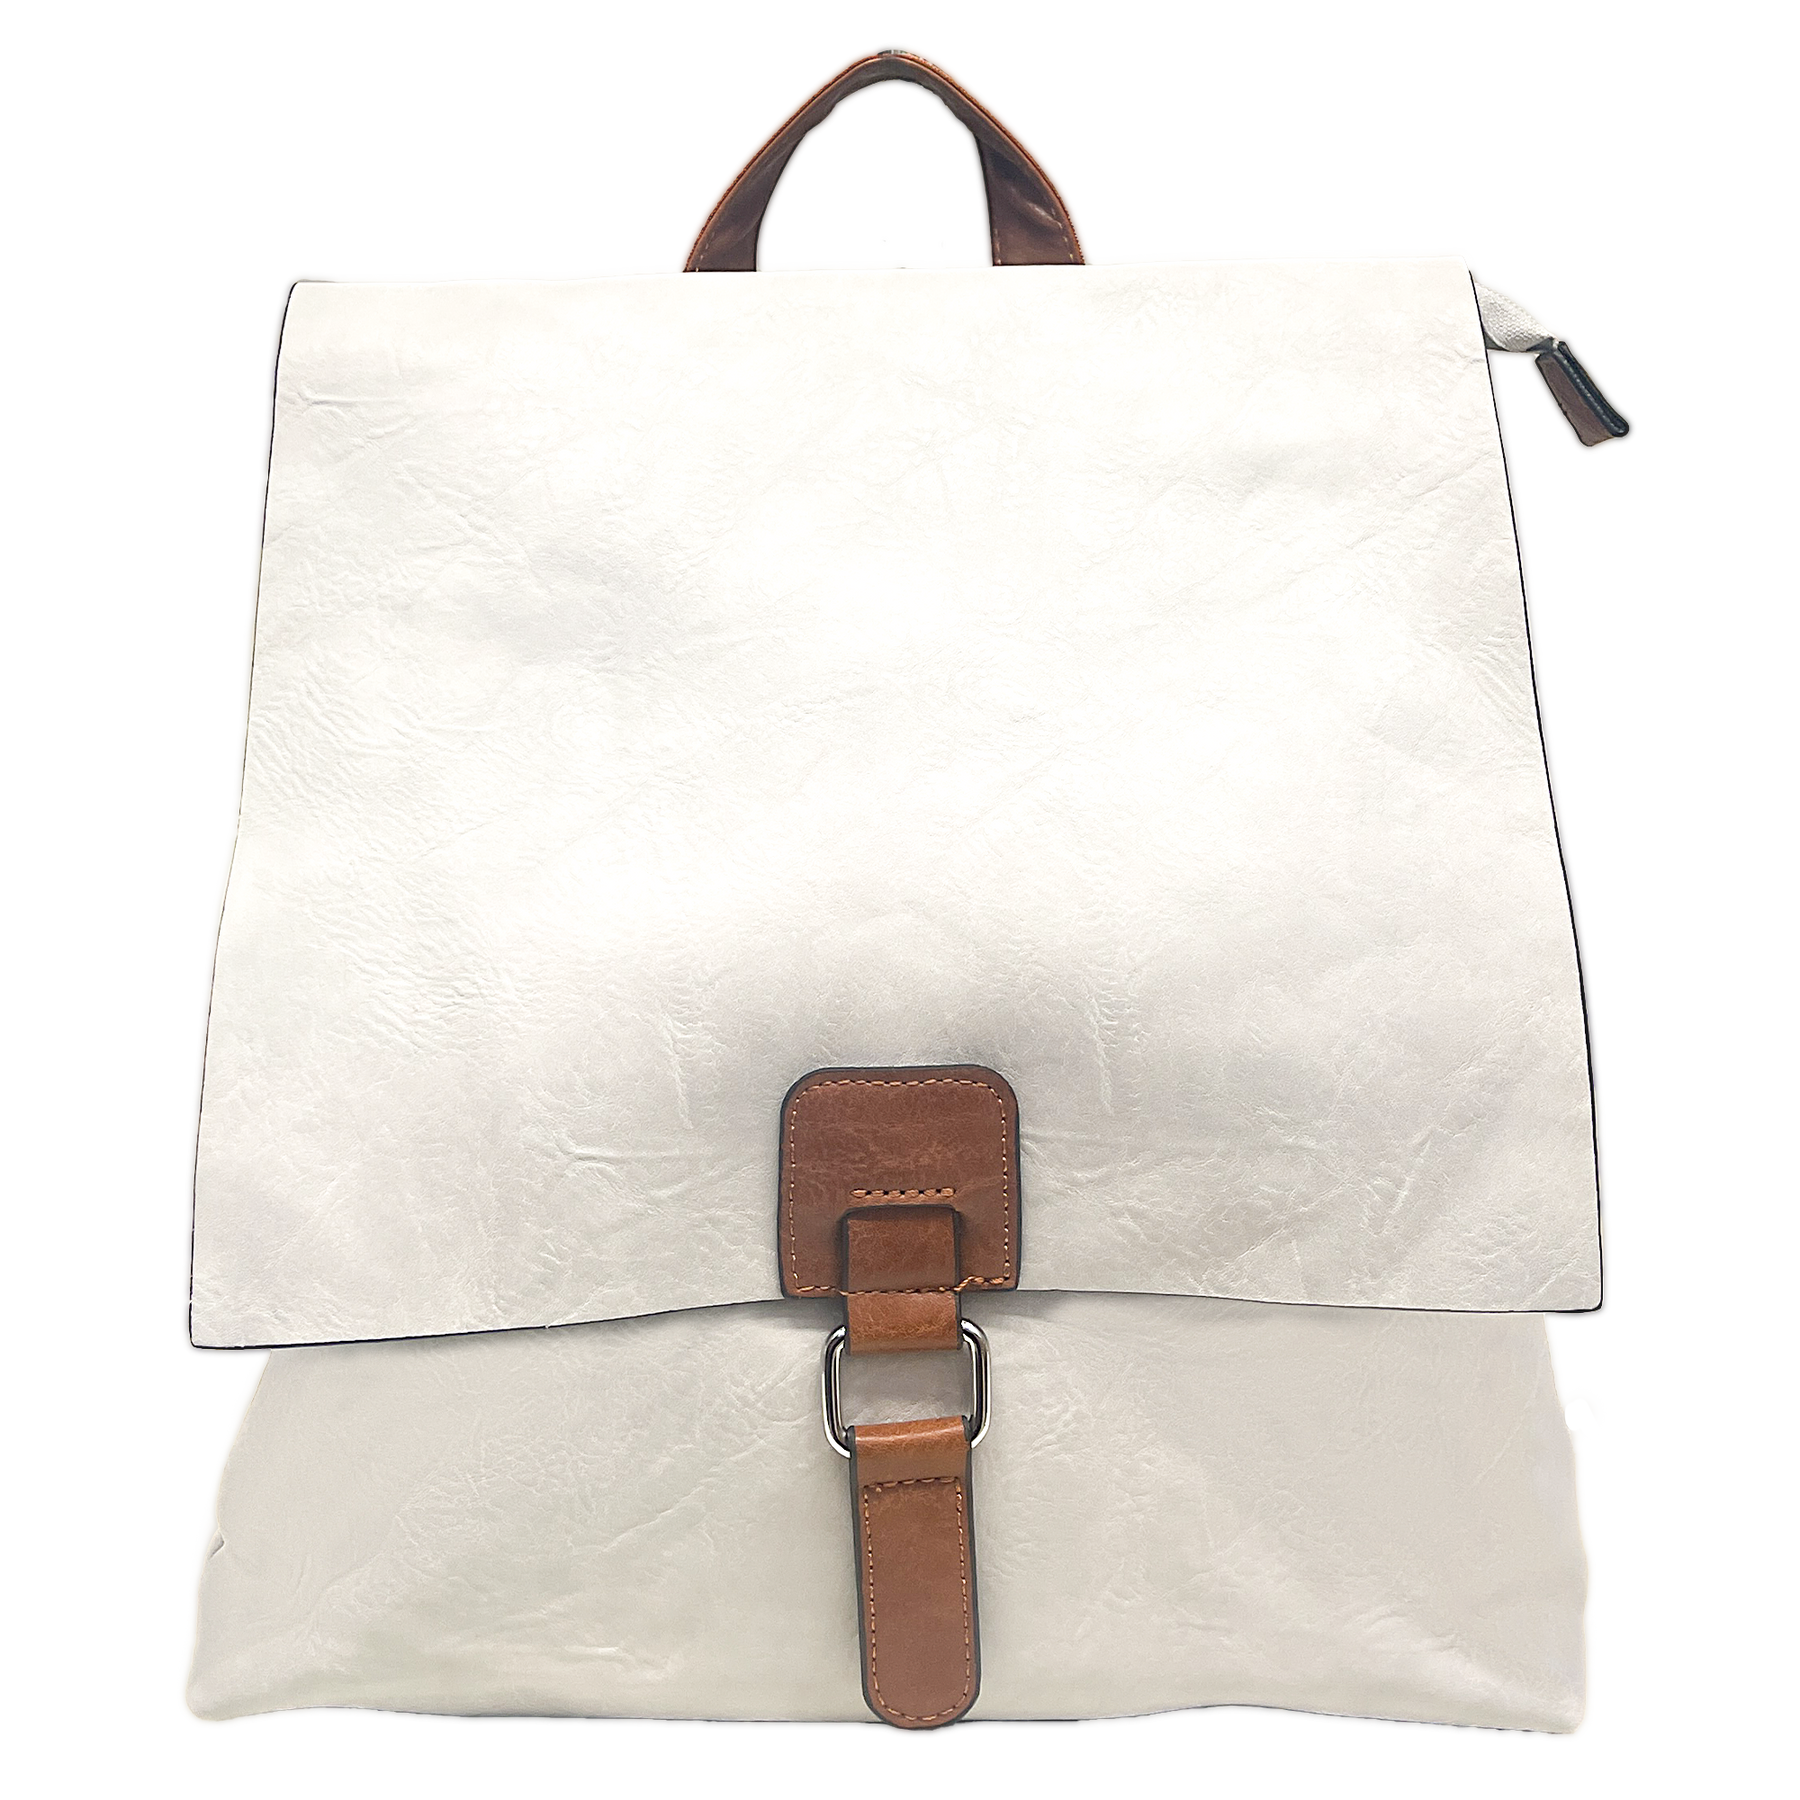 2-in-1 transzformálható hátizsák: Vintage stílus, duplán használjon táskát vállszíjjal és hátizsákkal